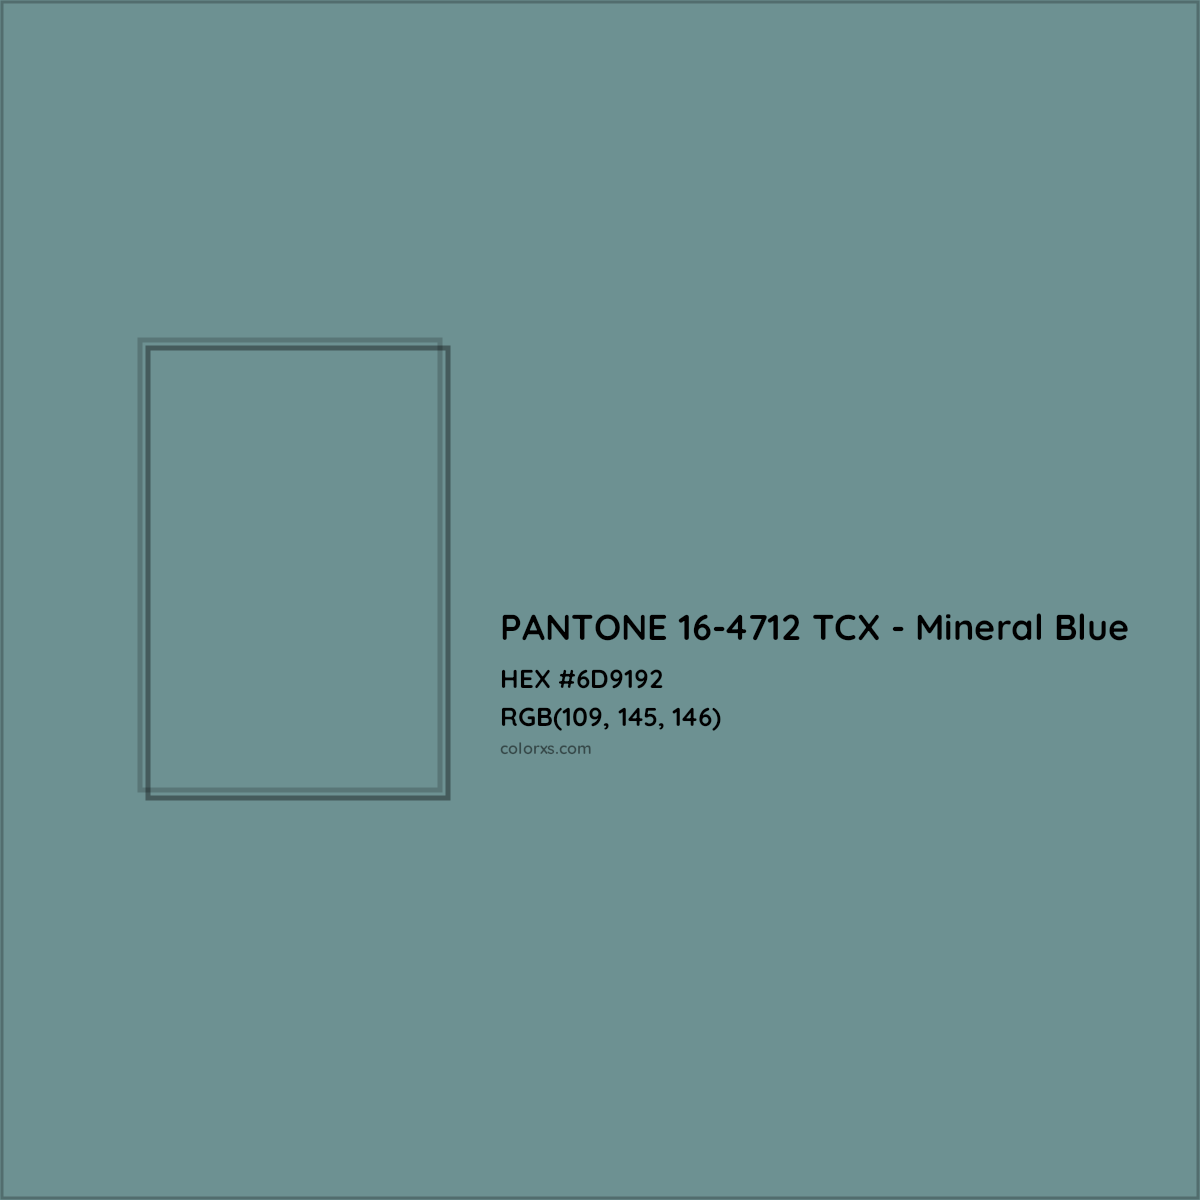 HEX #6D9192 PANTONE 16-4712 TCX - Mineral Blue CMS Pantone TCX - Color Code